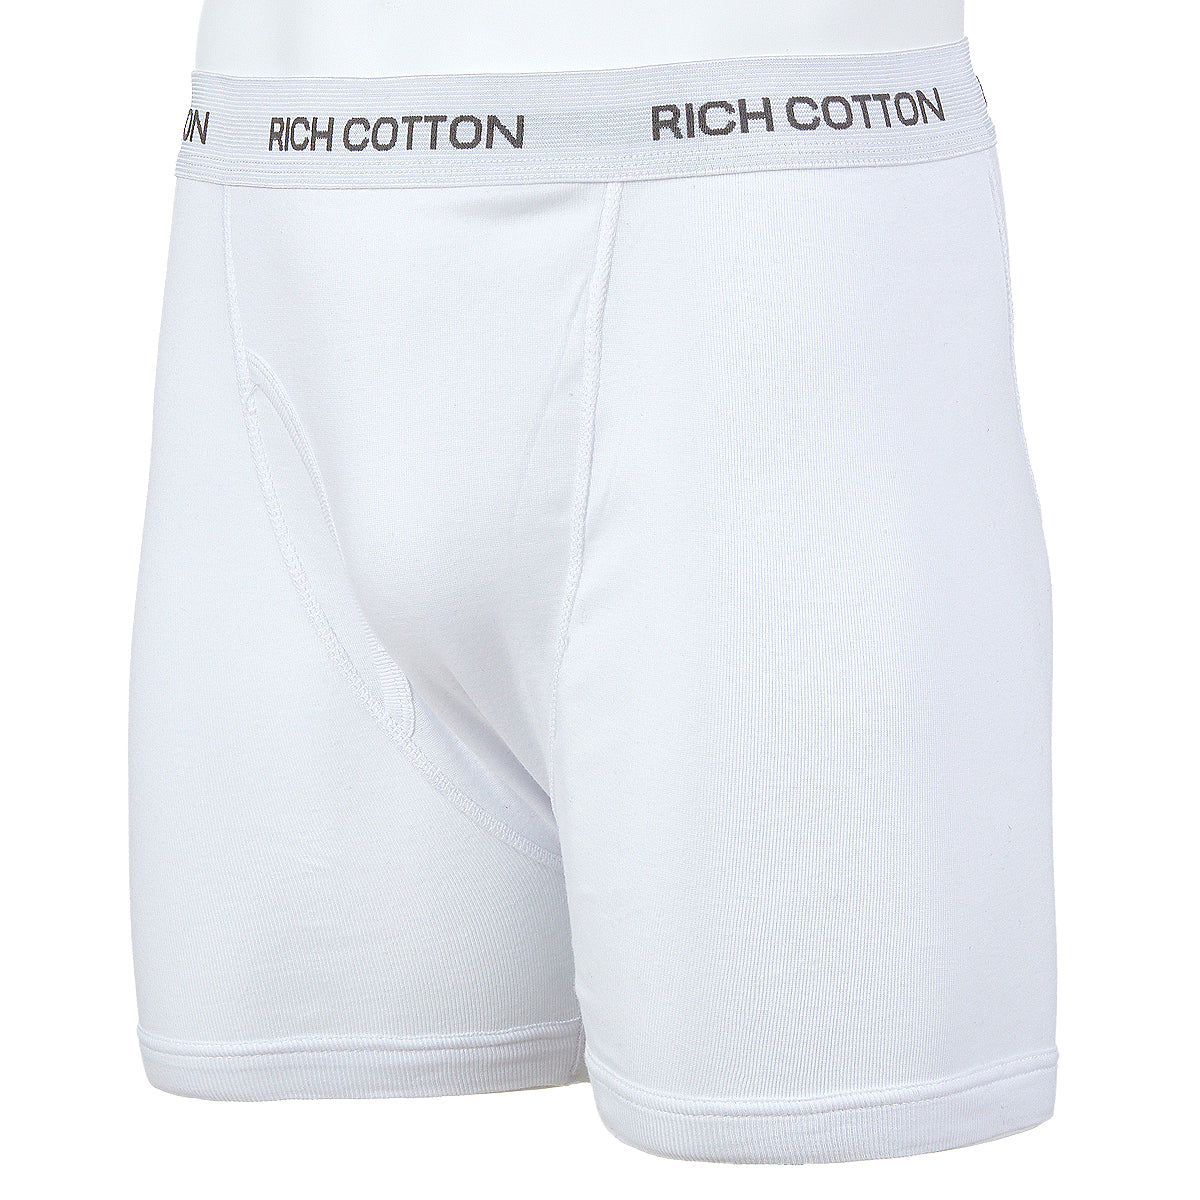 Men's Boxer Briefs 4 Pack Mix Colors - Rich Cotton